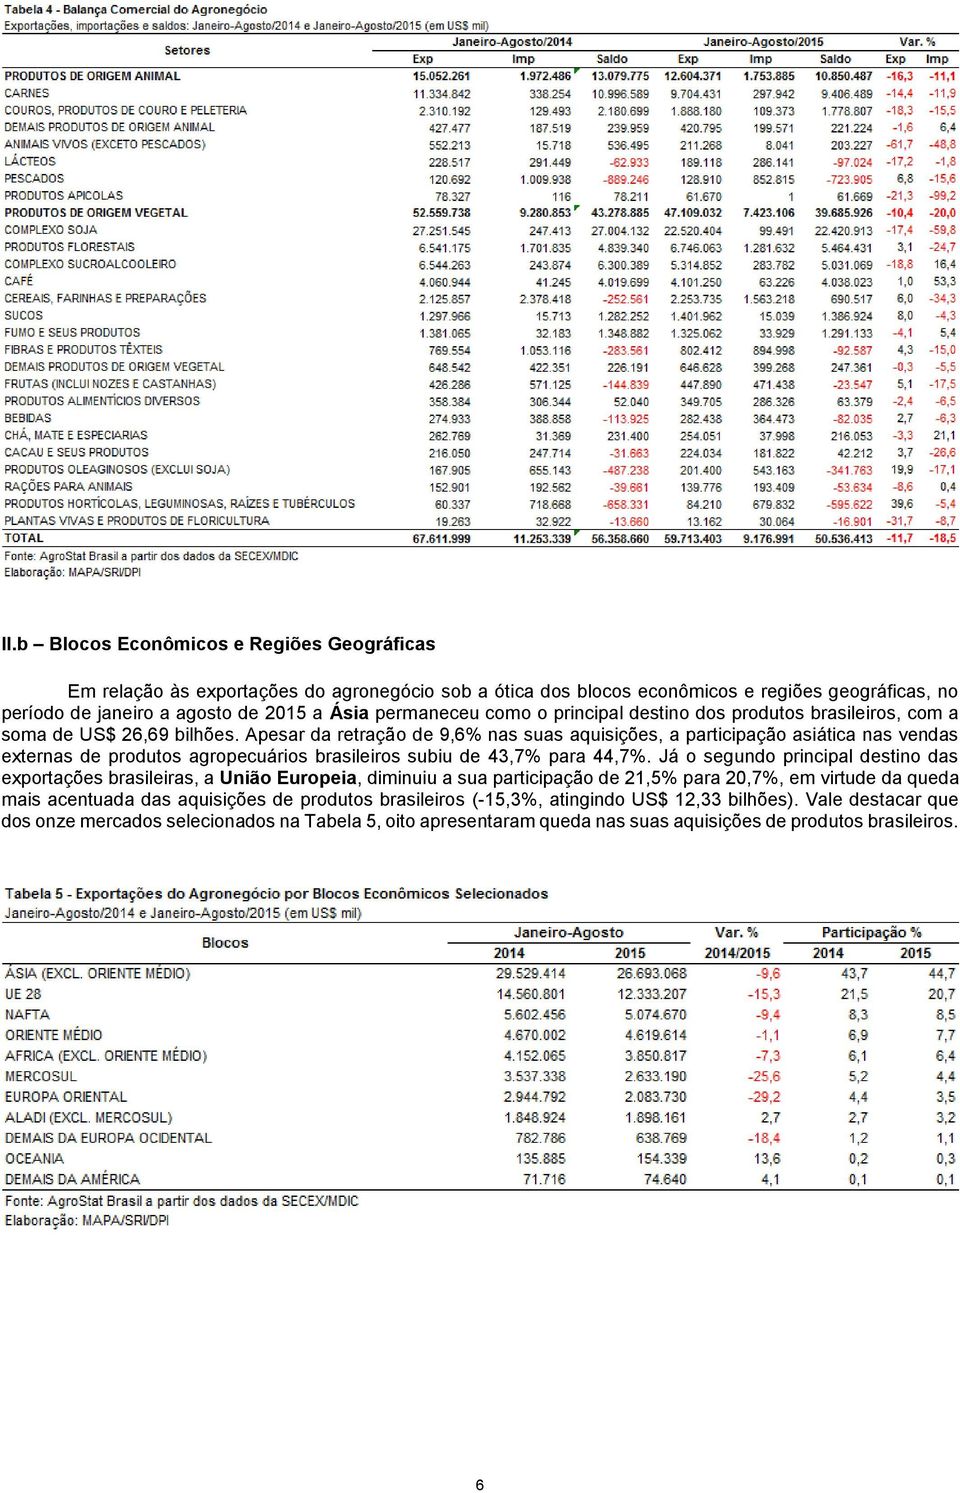 Apesar da retração de 9,6% nas suas aquisições, a participação asiática nas vendas externas de produtos agropecuários brasileiros subiu de 43,7% para 44,7%.